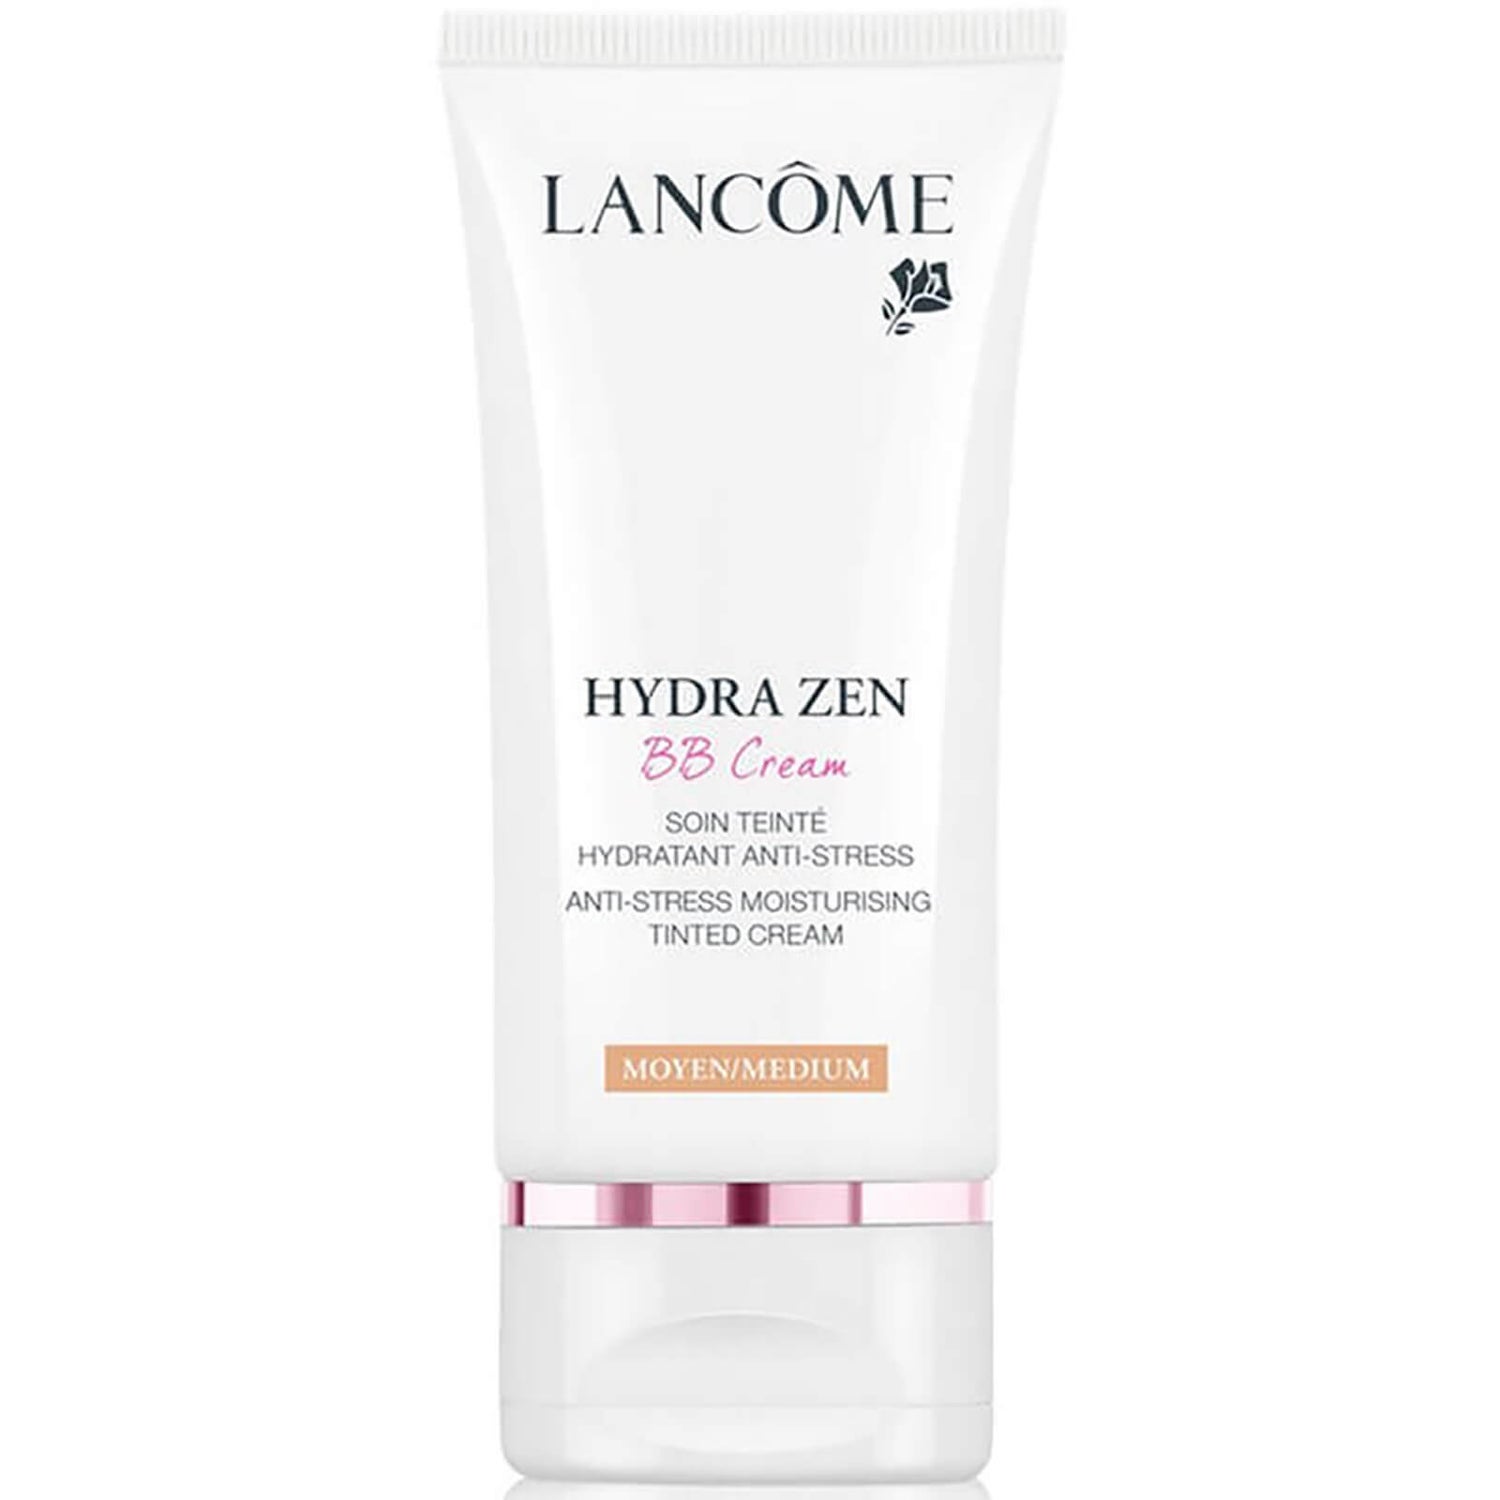 Lancôme Hydra Zen BB Cream 50ml